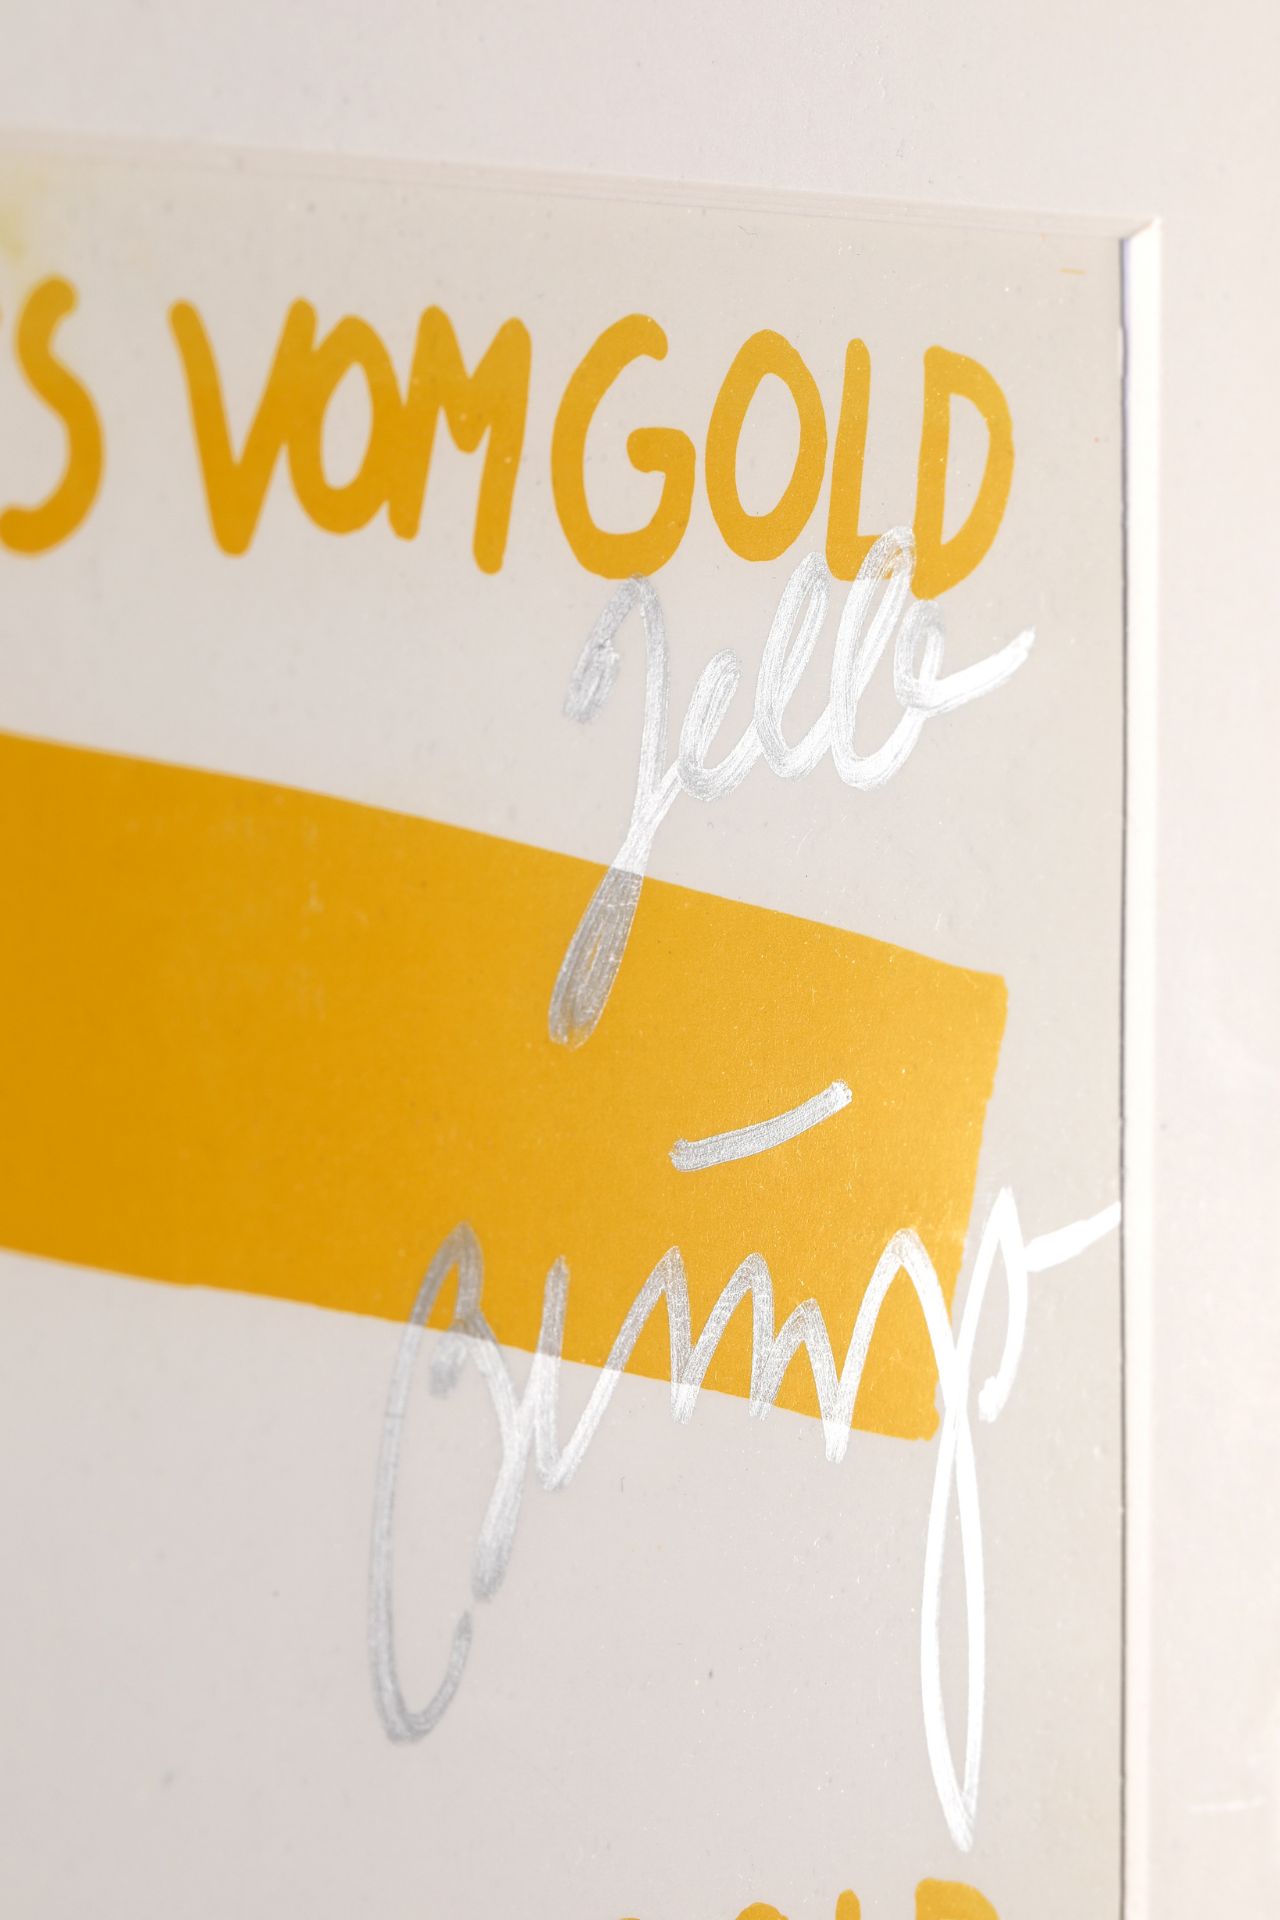 Joseph Beuys*, Fehldruck, überarbeitet, Neues vom Gold - Bild 4 aus 4